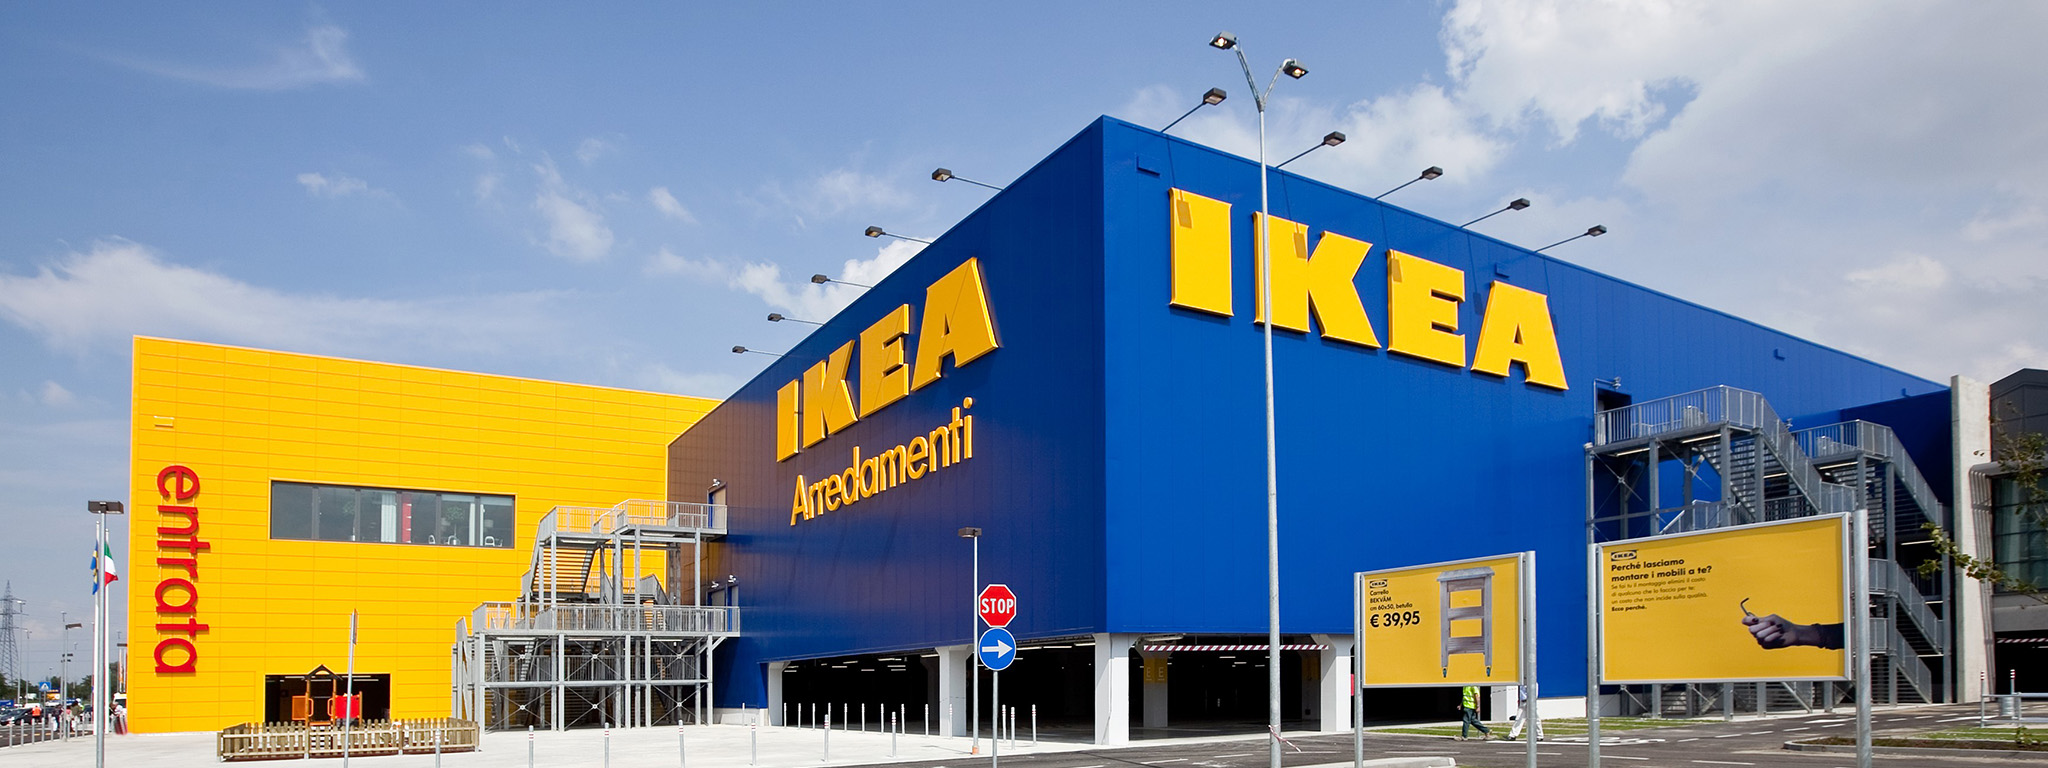 nội thất IKEA: tin tức, hình ảnh, video, bình luận mới nhất